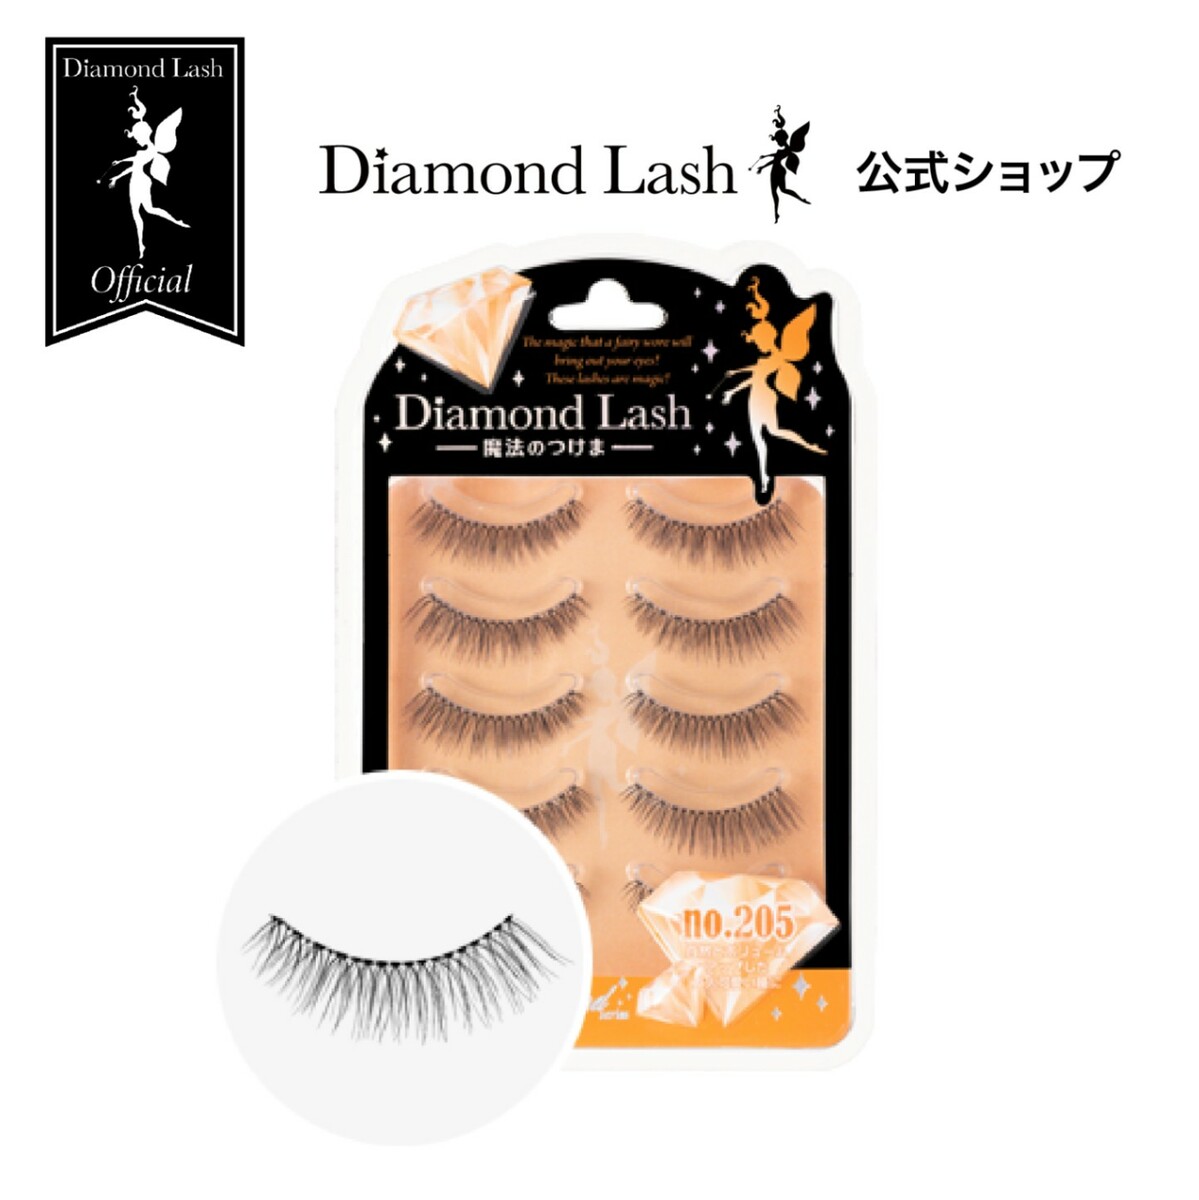 DiamondLash Orange Diamond Series 自然とボリュームアップした大人可愛い瞳に つけまつげ ベースメイク・メイクアップ 